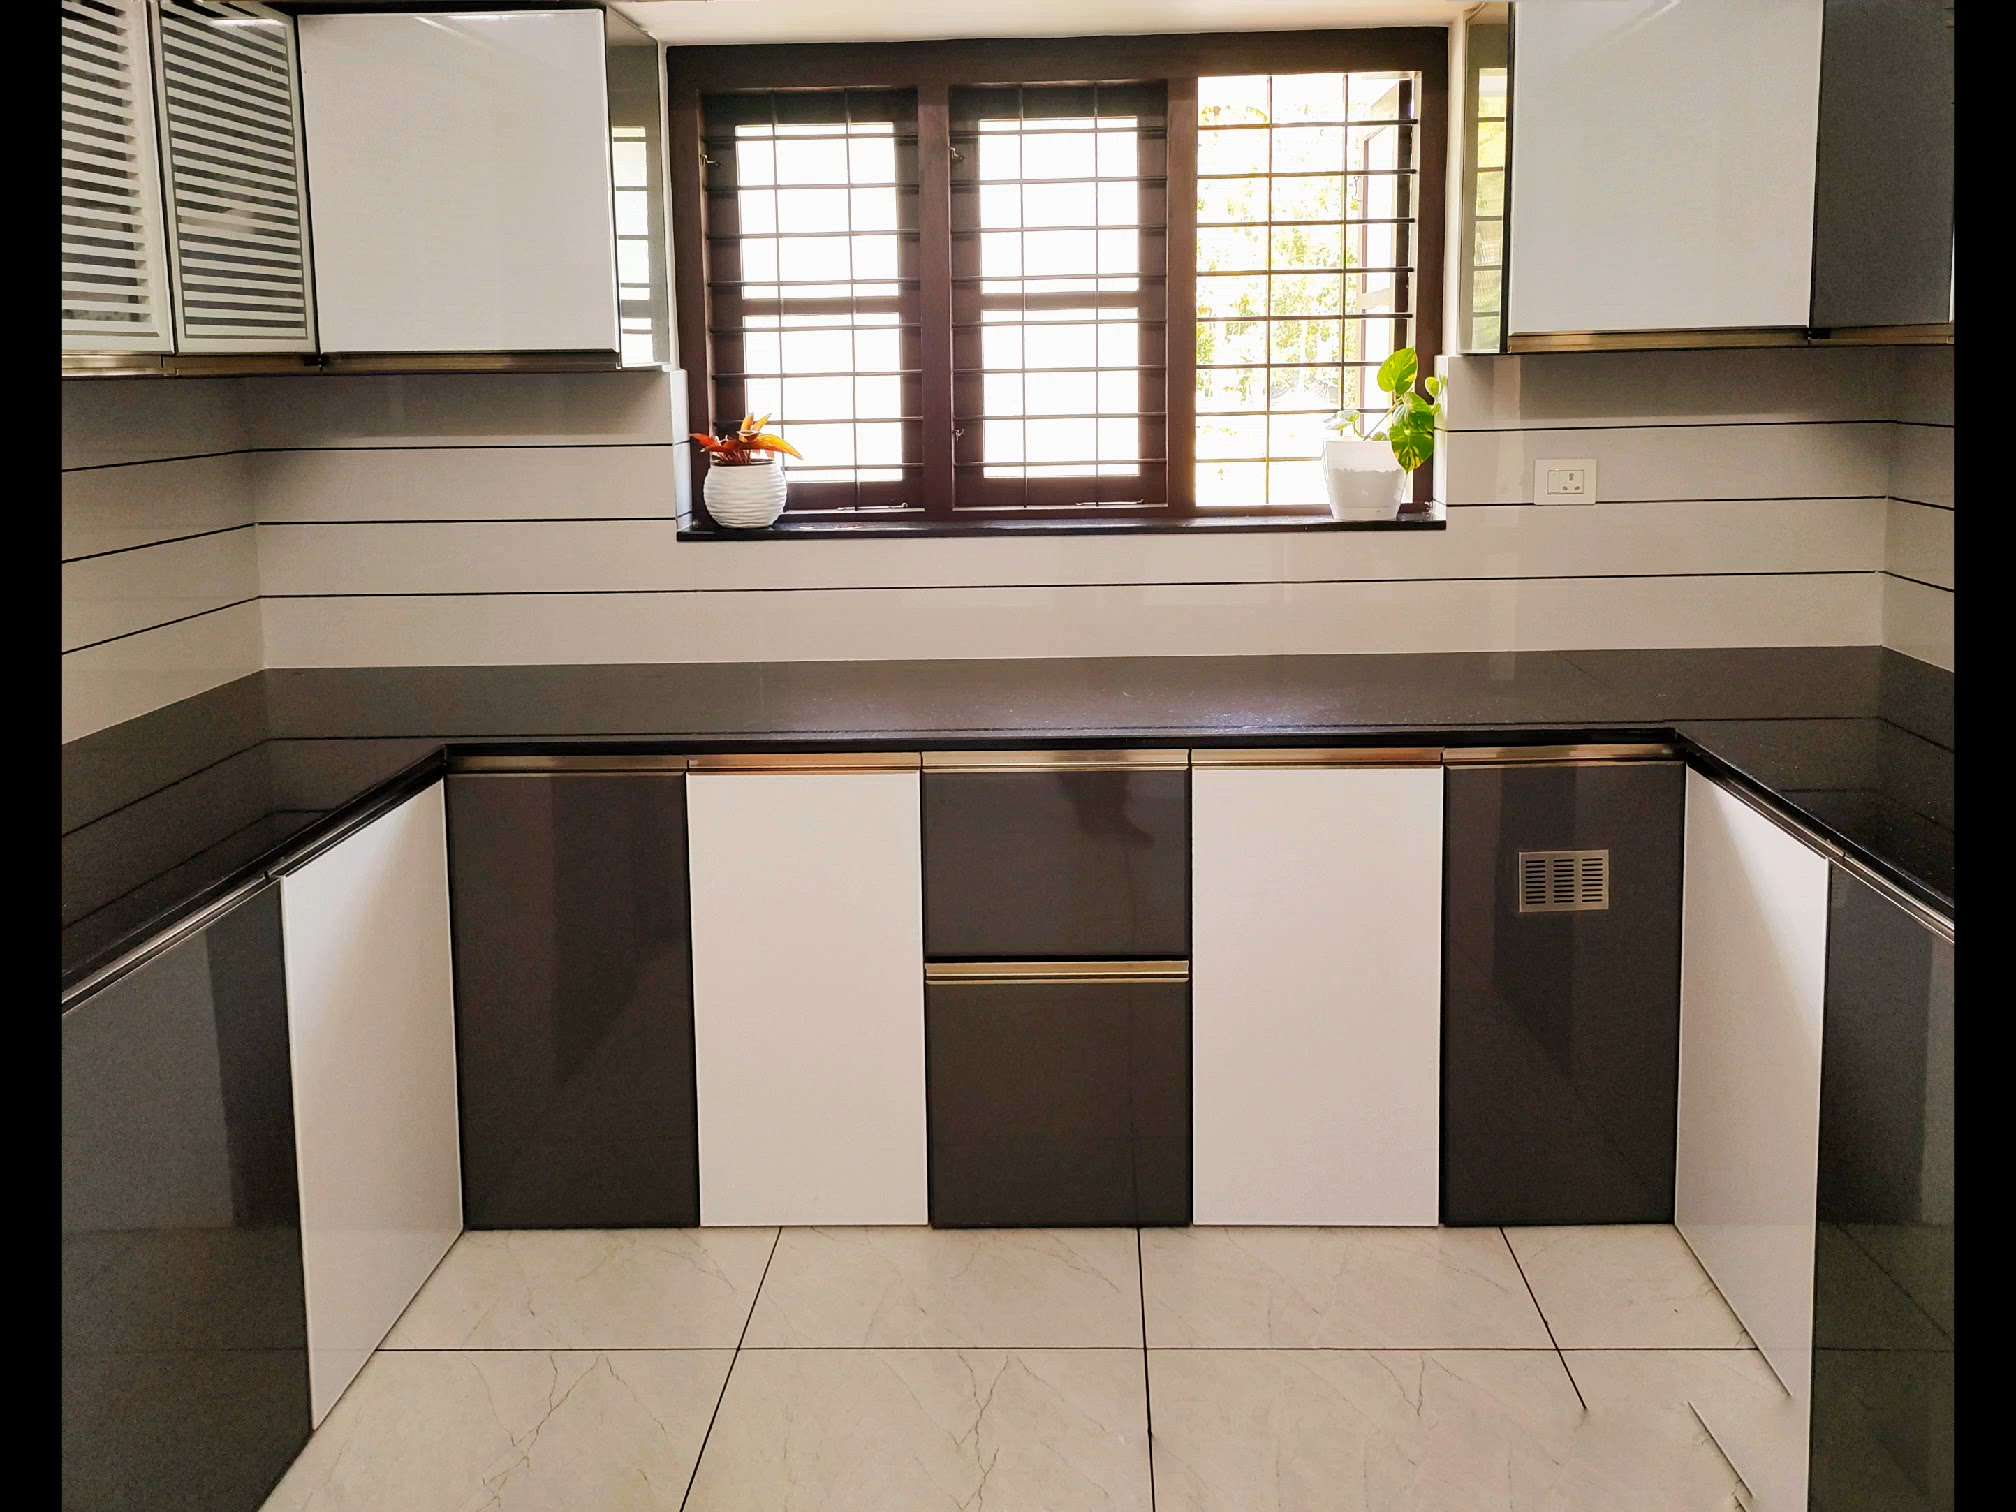 aluminium Modular kitchen.9947989563
 #ModularKitchen  #modularwardrobe  #ClosedKitchen  #KitchenIdeas  #KitchenCabinet  #KitchenRenovation  #KitchenInterior  #wpcwork  #KeralaStyleHouse  #Kollam